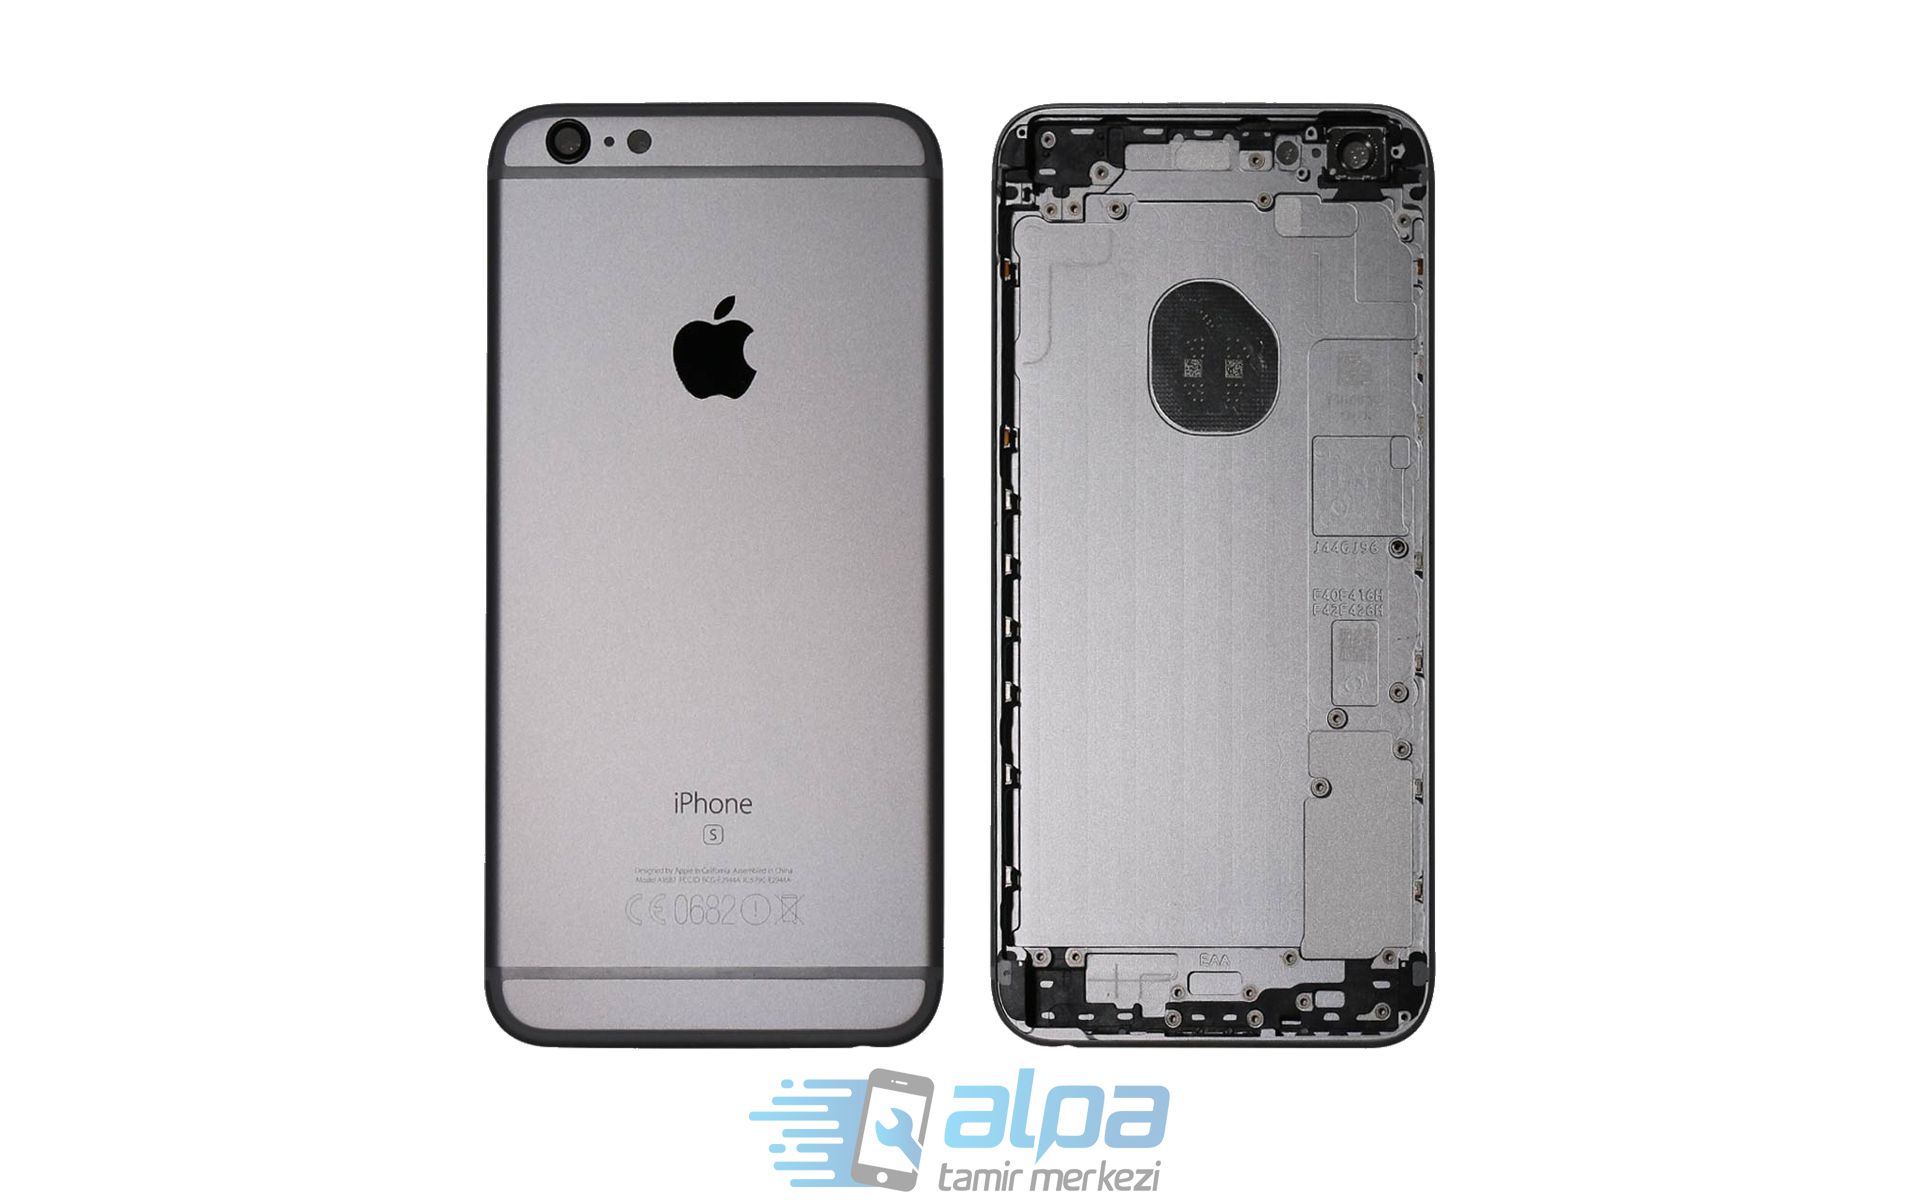 iPhone 6s Plus Kasa Değişimi Fiyatı 849 TL